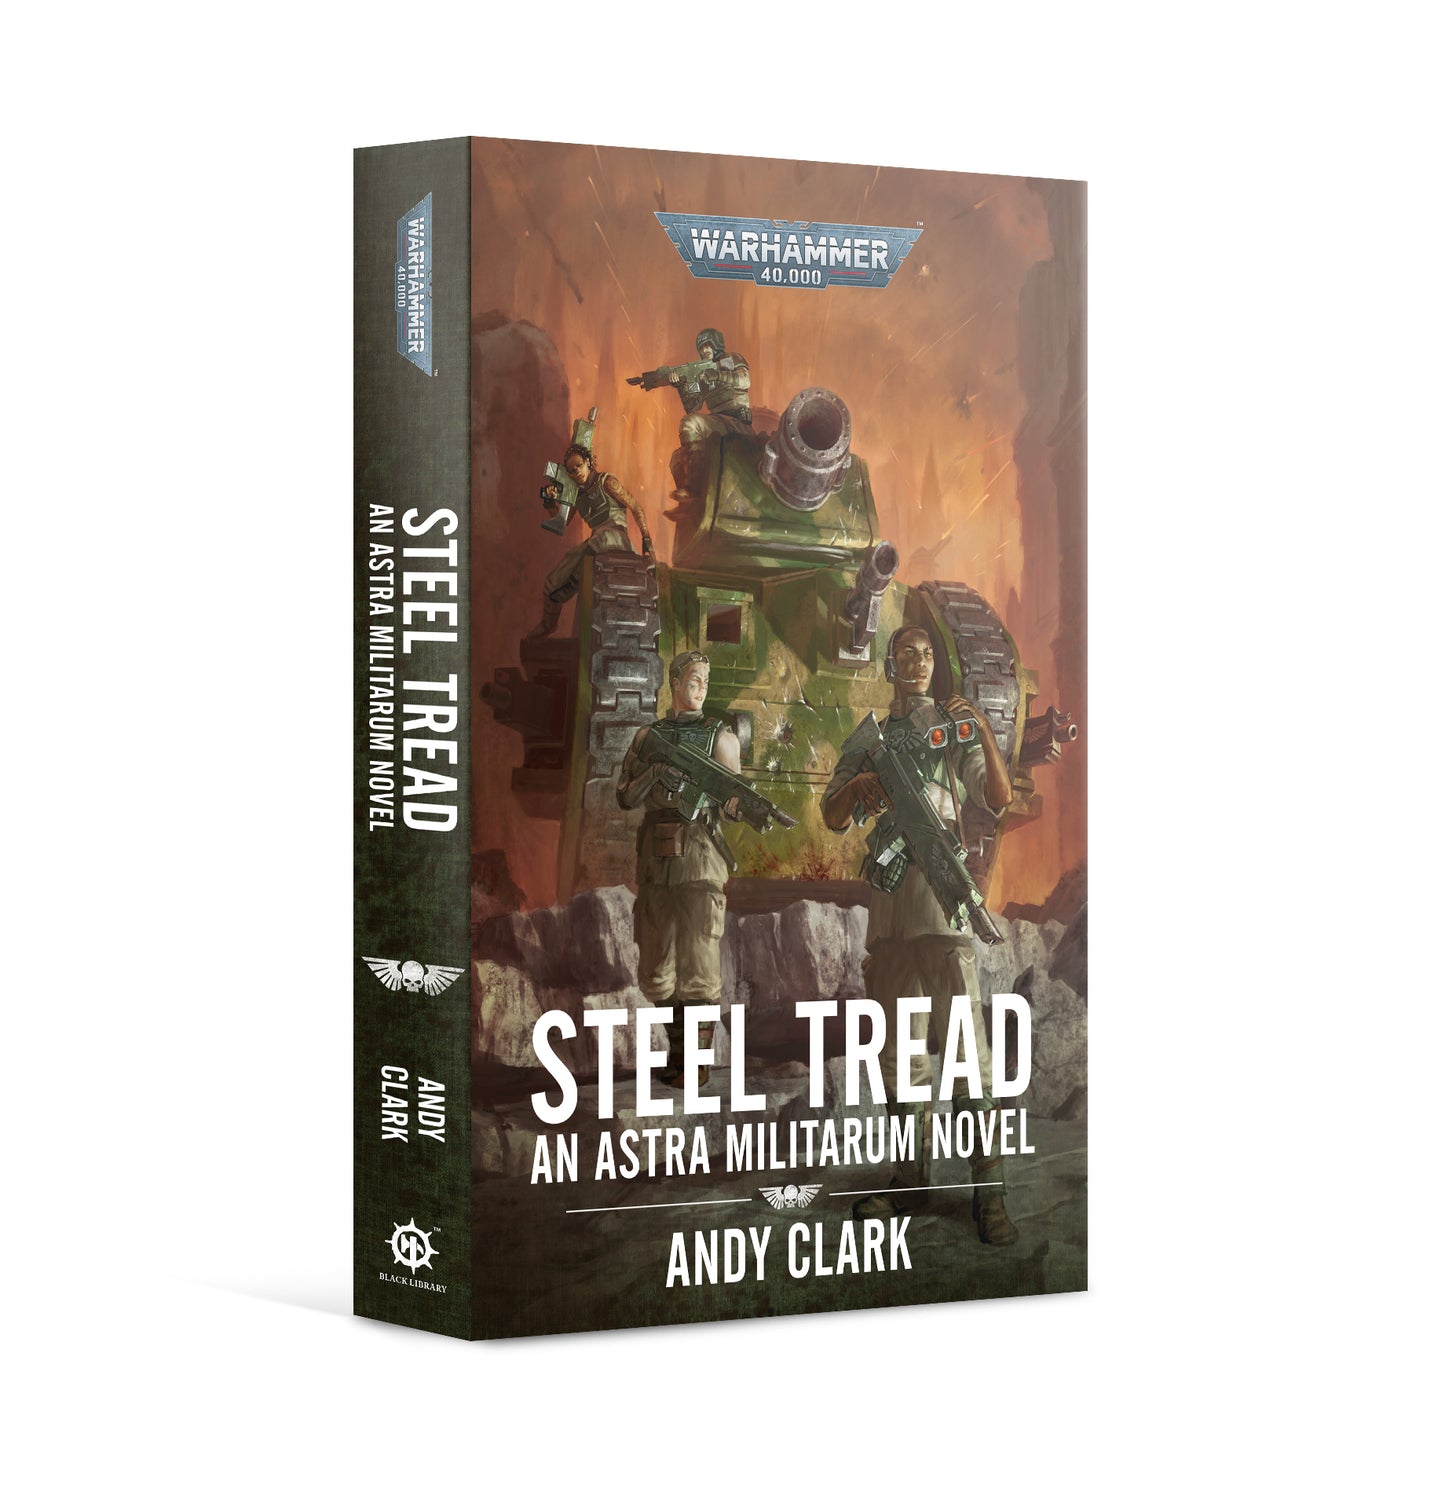 Steel tread